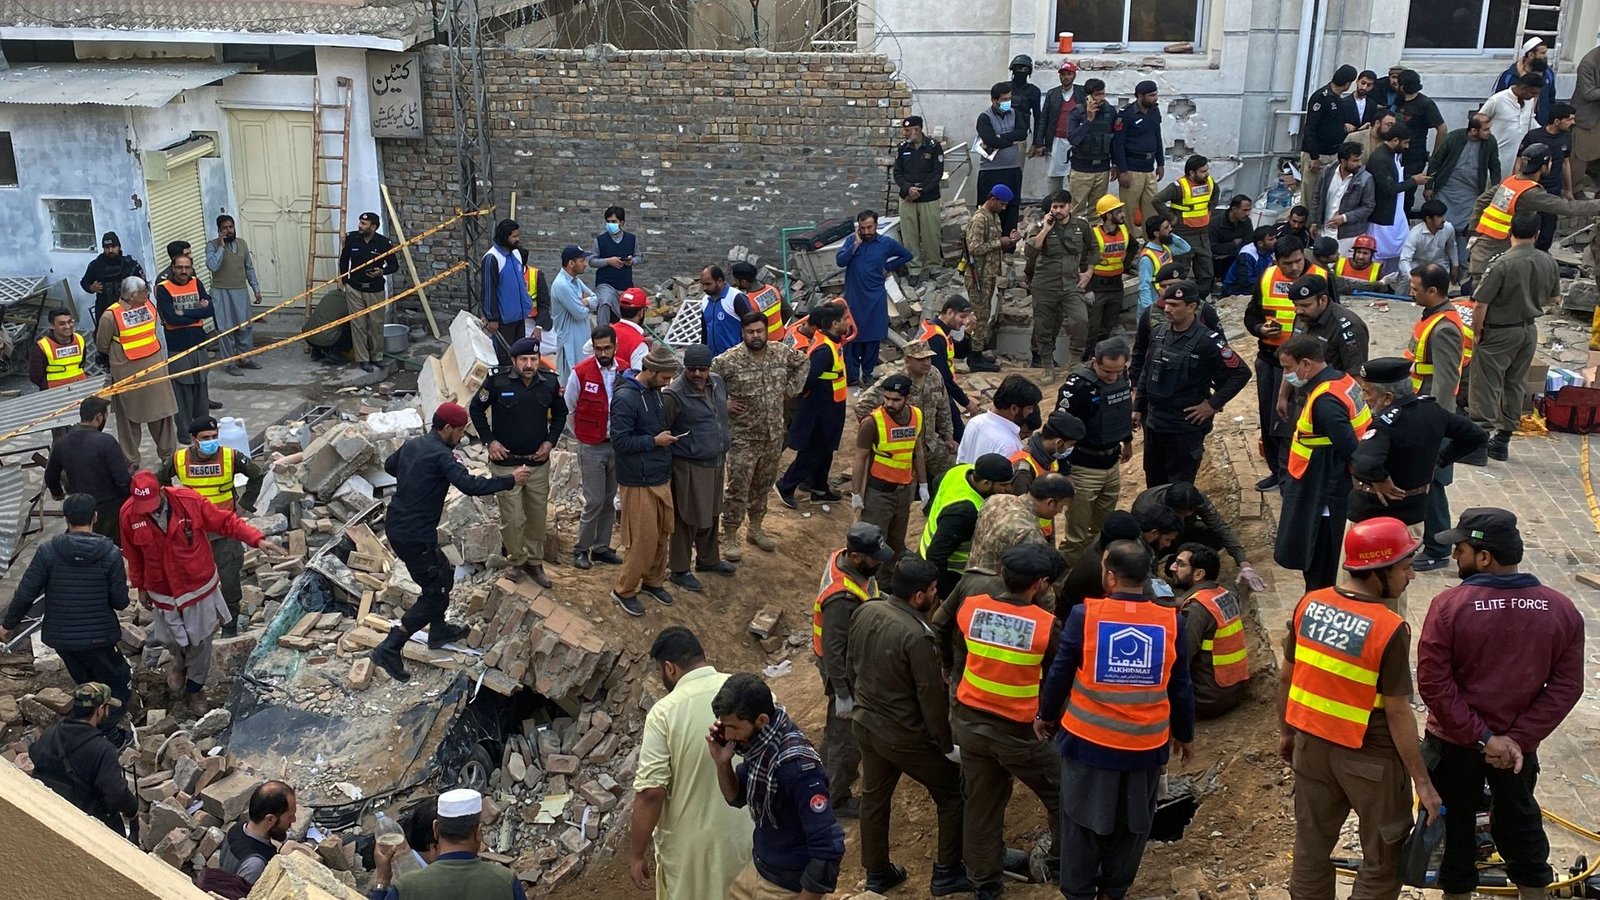 Sicherheitsbeamte und Rettungskräfte suchen nach dem Selbstmordattentat nach weiteren Opfern.Foto: Zubair Khan/AP/dpa